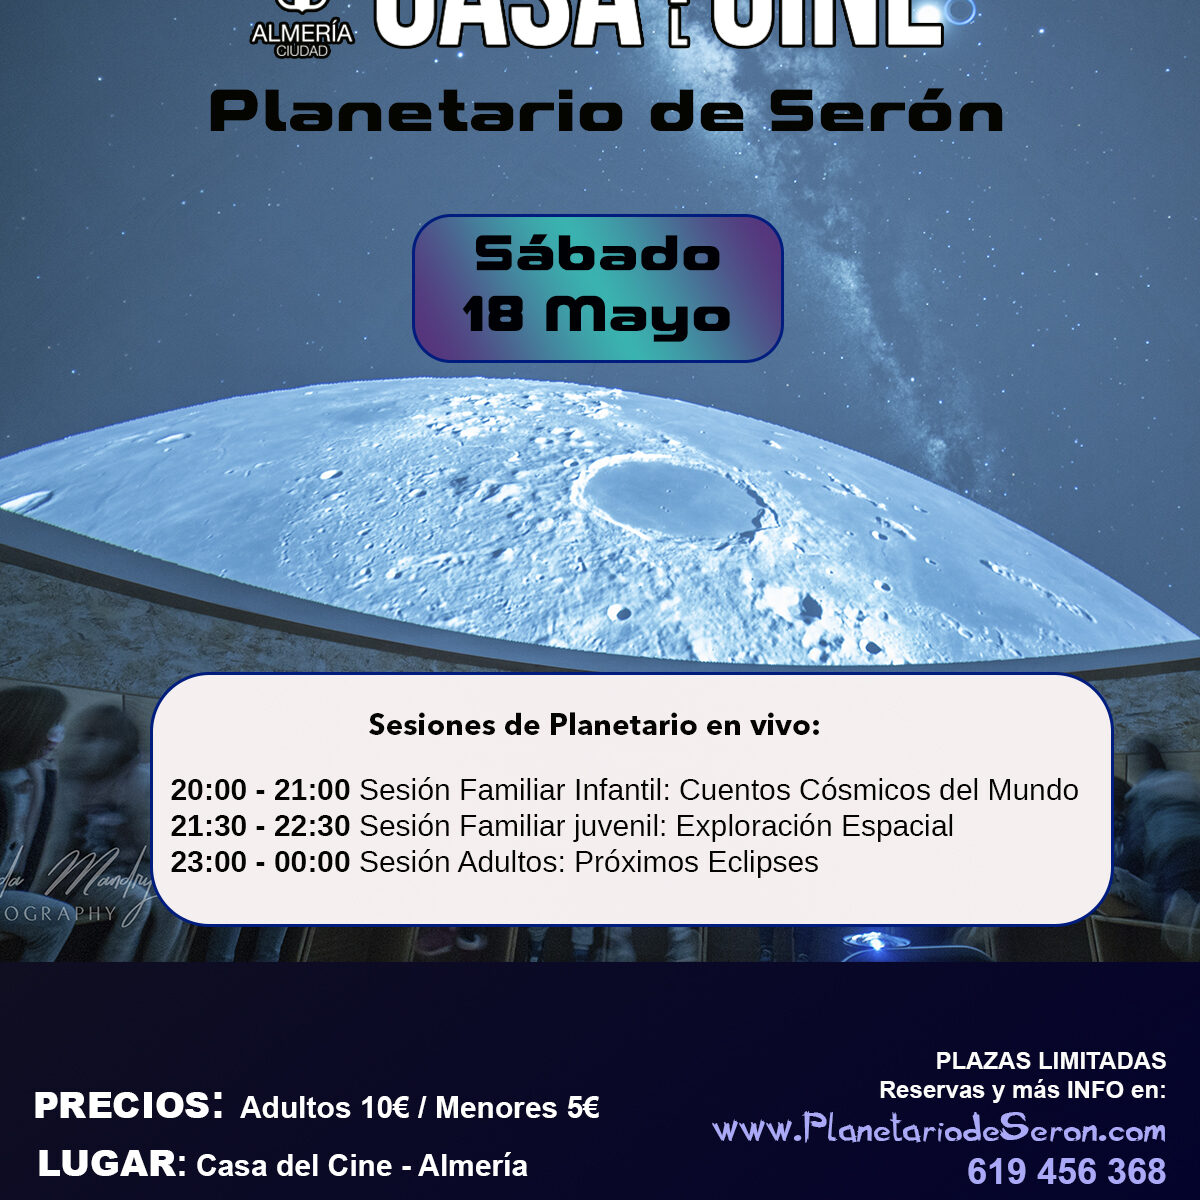 Planetario de Seron Almeria en la Casa del Cine